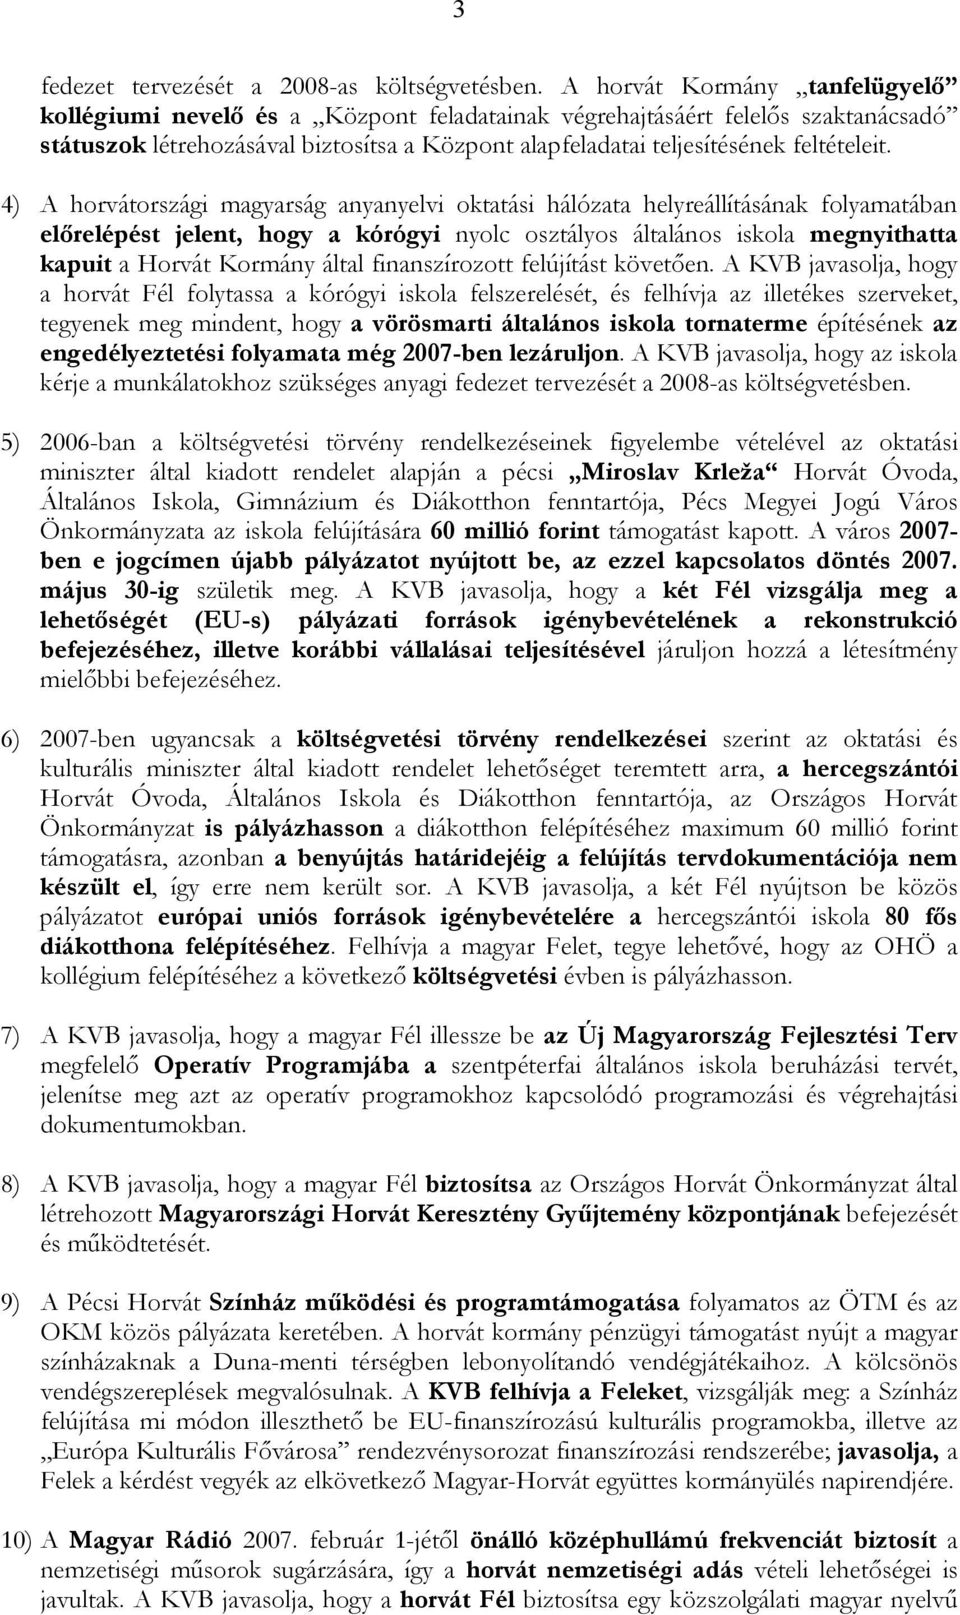 4) A horvátországi magyarság anyanyelvi oktatási hálózata helyreállításának folyamatában előrelépést jelent, hogy a kórógyi nyolc osztályos általános iskola megnyithatta kapuit a Horvát Kormány által